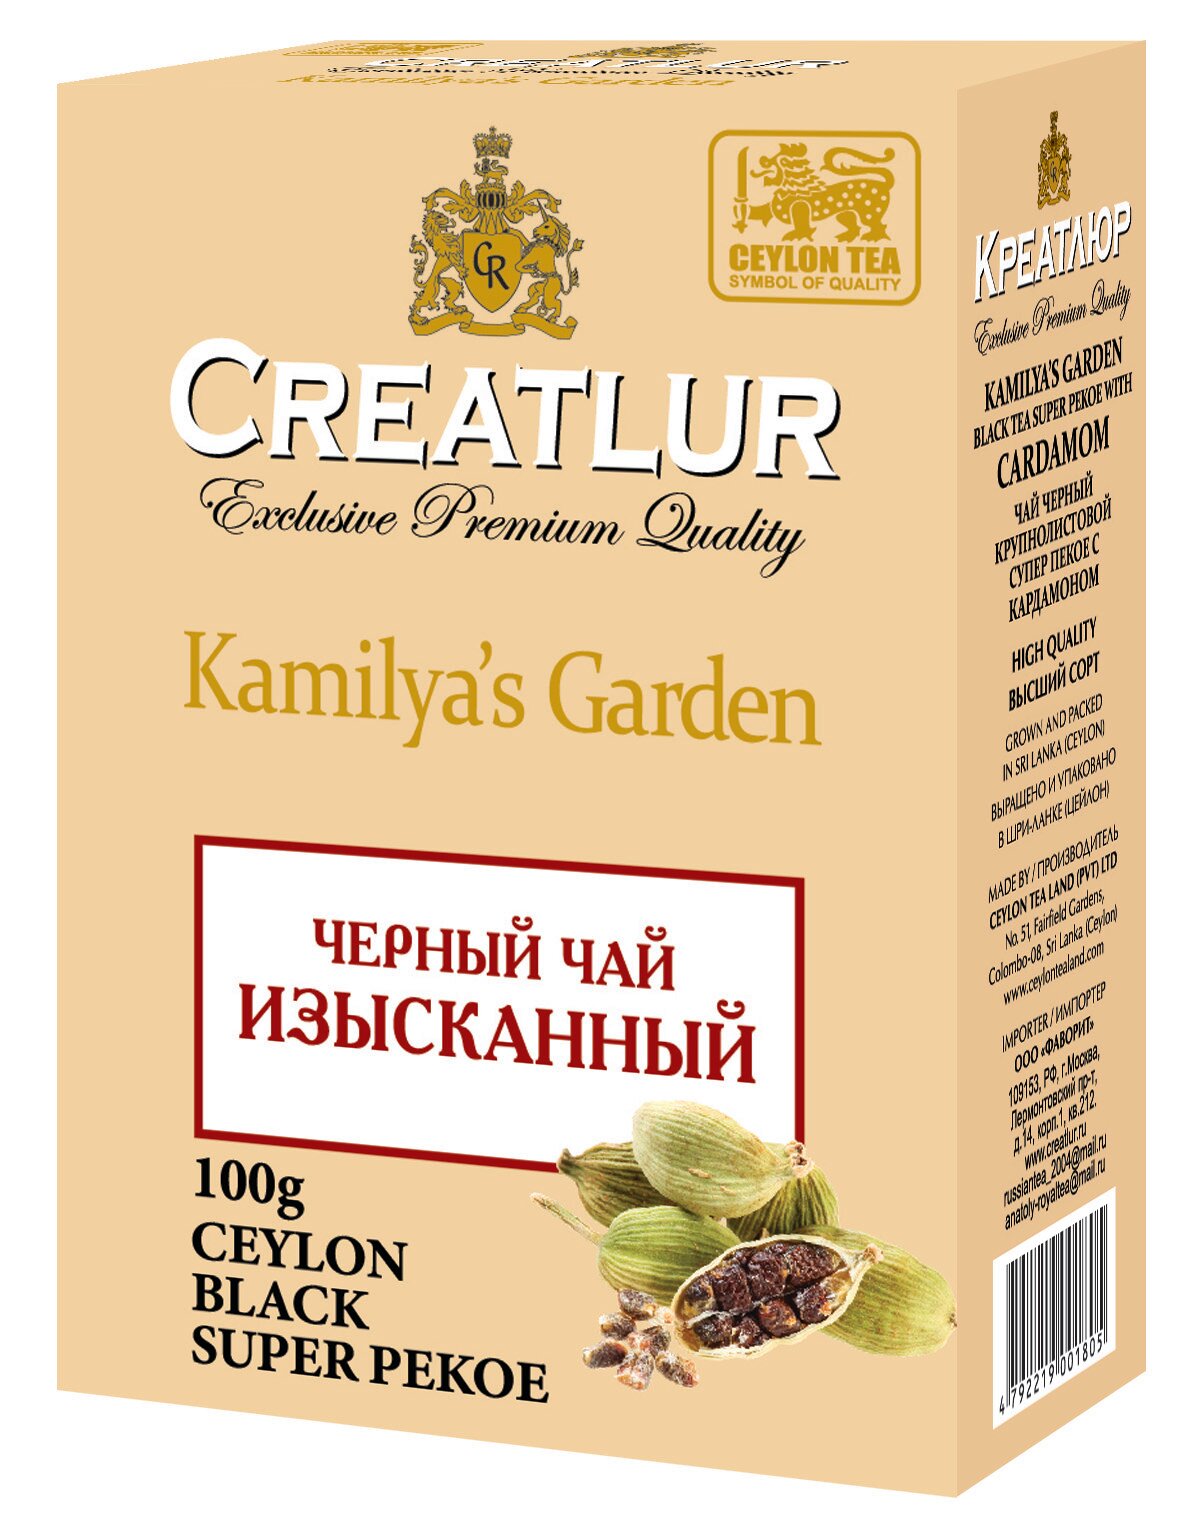 Чай Черный Изысканный с кардамоном Creatlur Kamilya's Garden, 100г